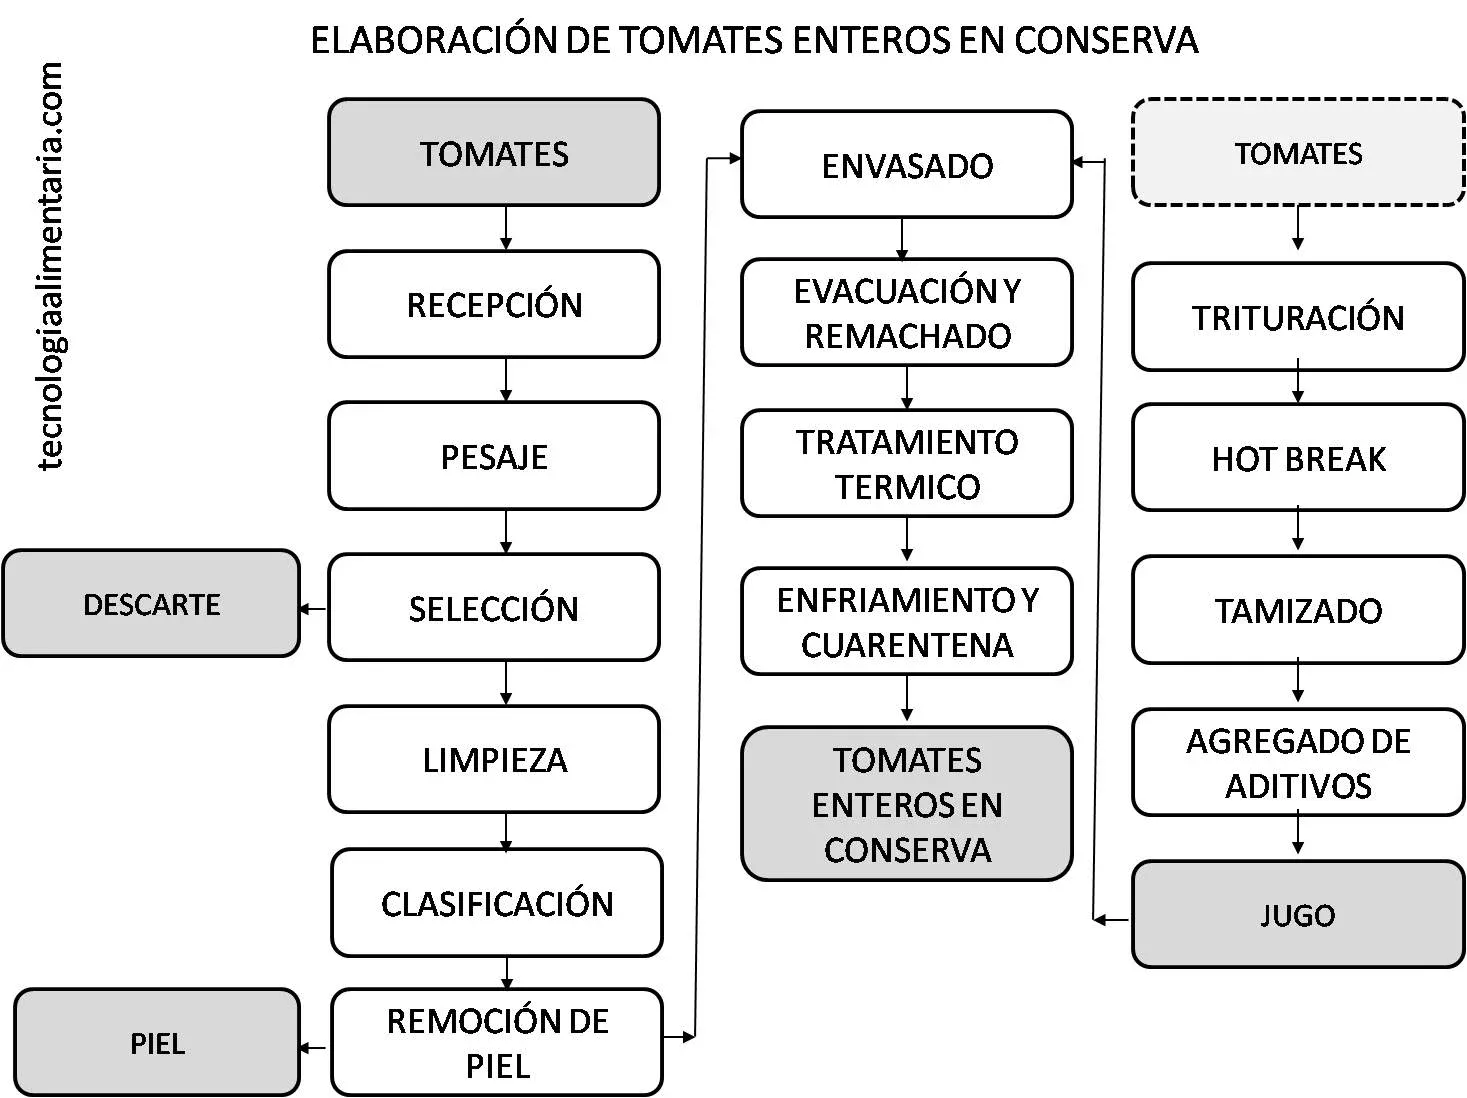 Diagrama de flujo elaboración de tomate entero en conserva